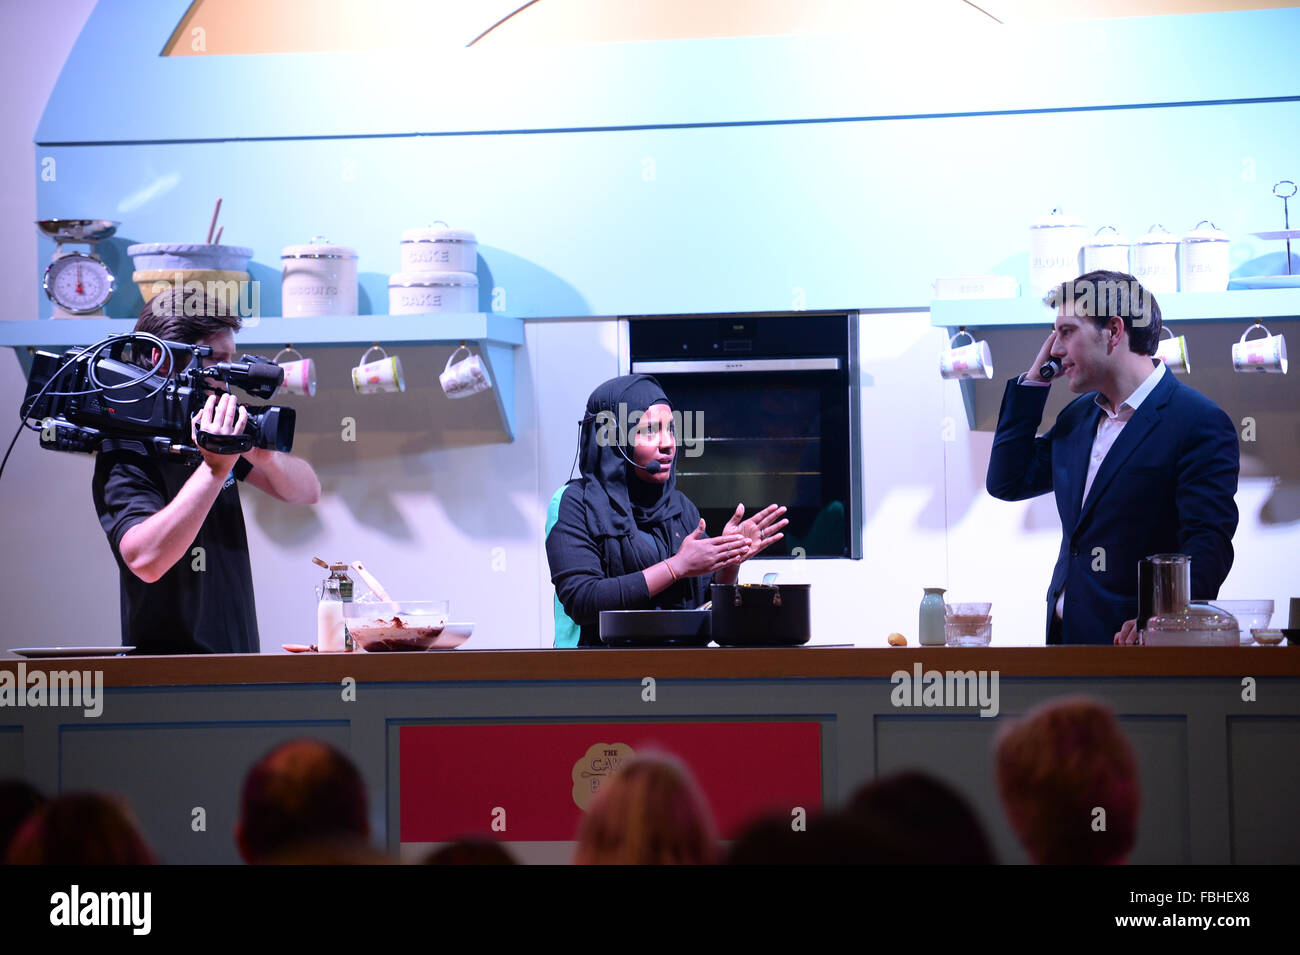 Nadiya Hussain, Gewinner des The Great British Bake Off 2015 nimmt Teil an einer Demonstration der Kochkunst am Kuchen und Backen zeigen. Stockfoto